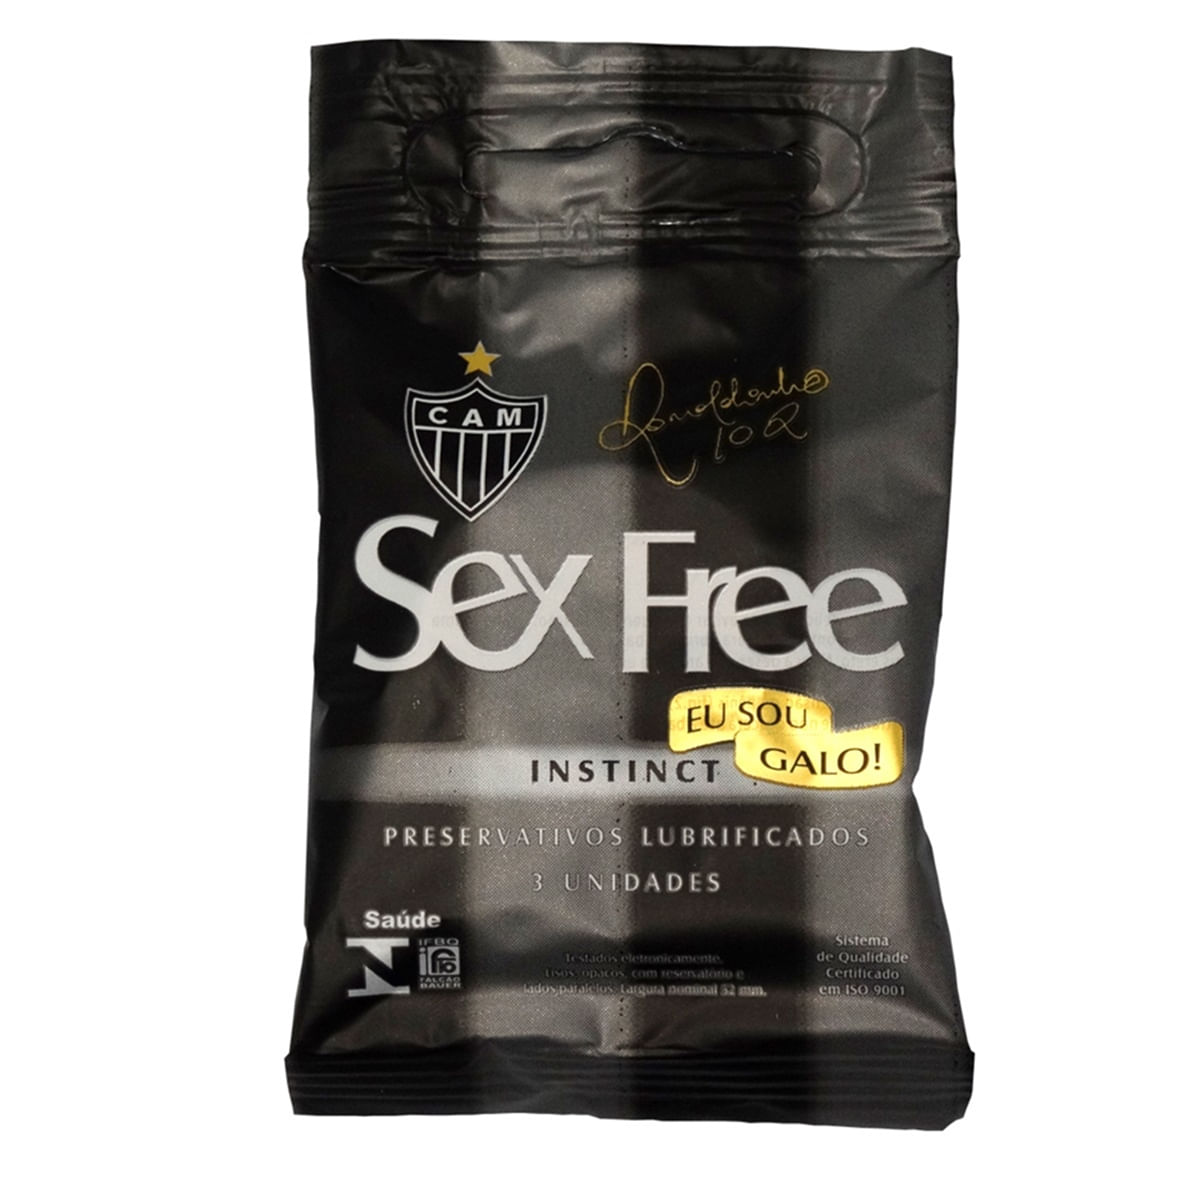 Preservativo Lubrificado Muito Prazer Sex Free Eu Sou Galo Instinct